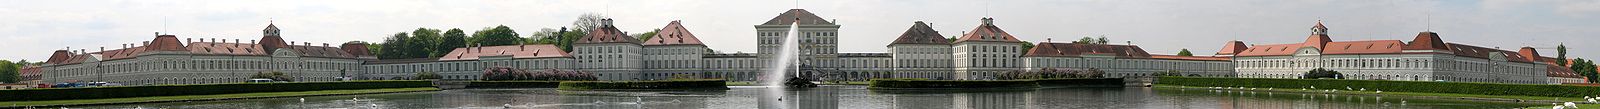 Architektur des Absolutismus französischer Prägung: Schloss Nymphenburg, München von der Stadtseite aus